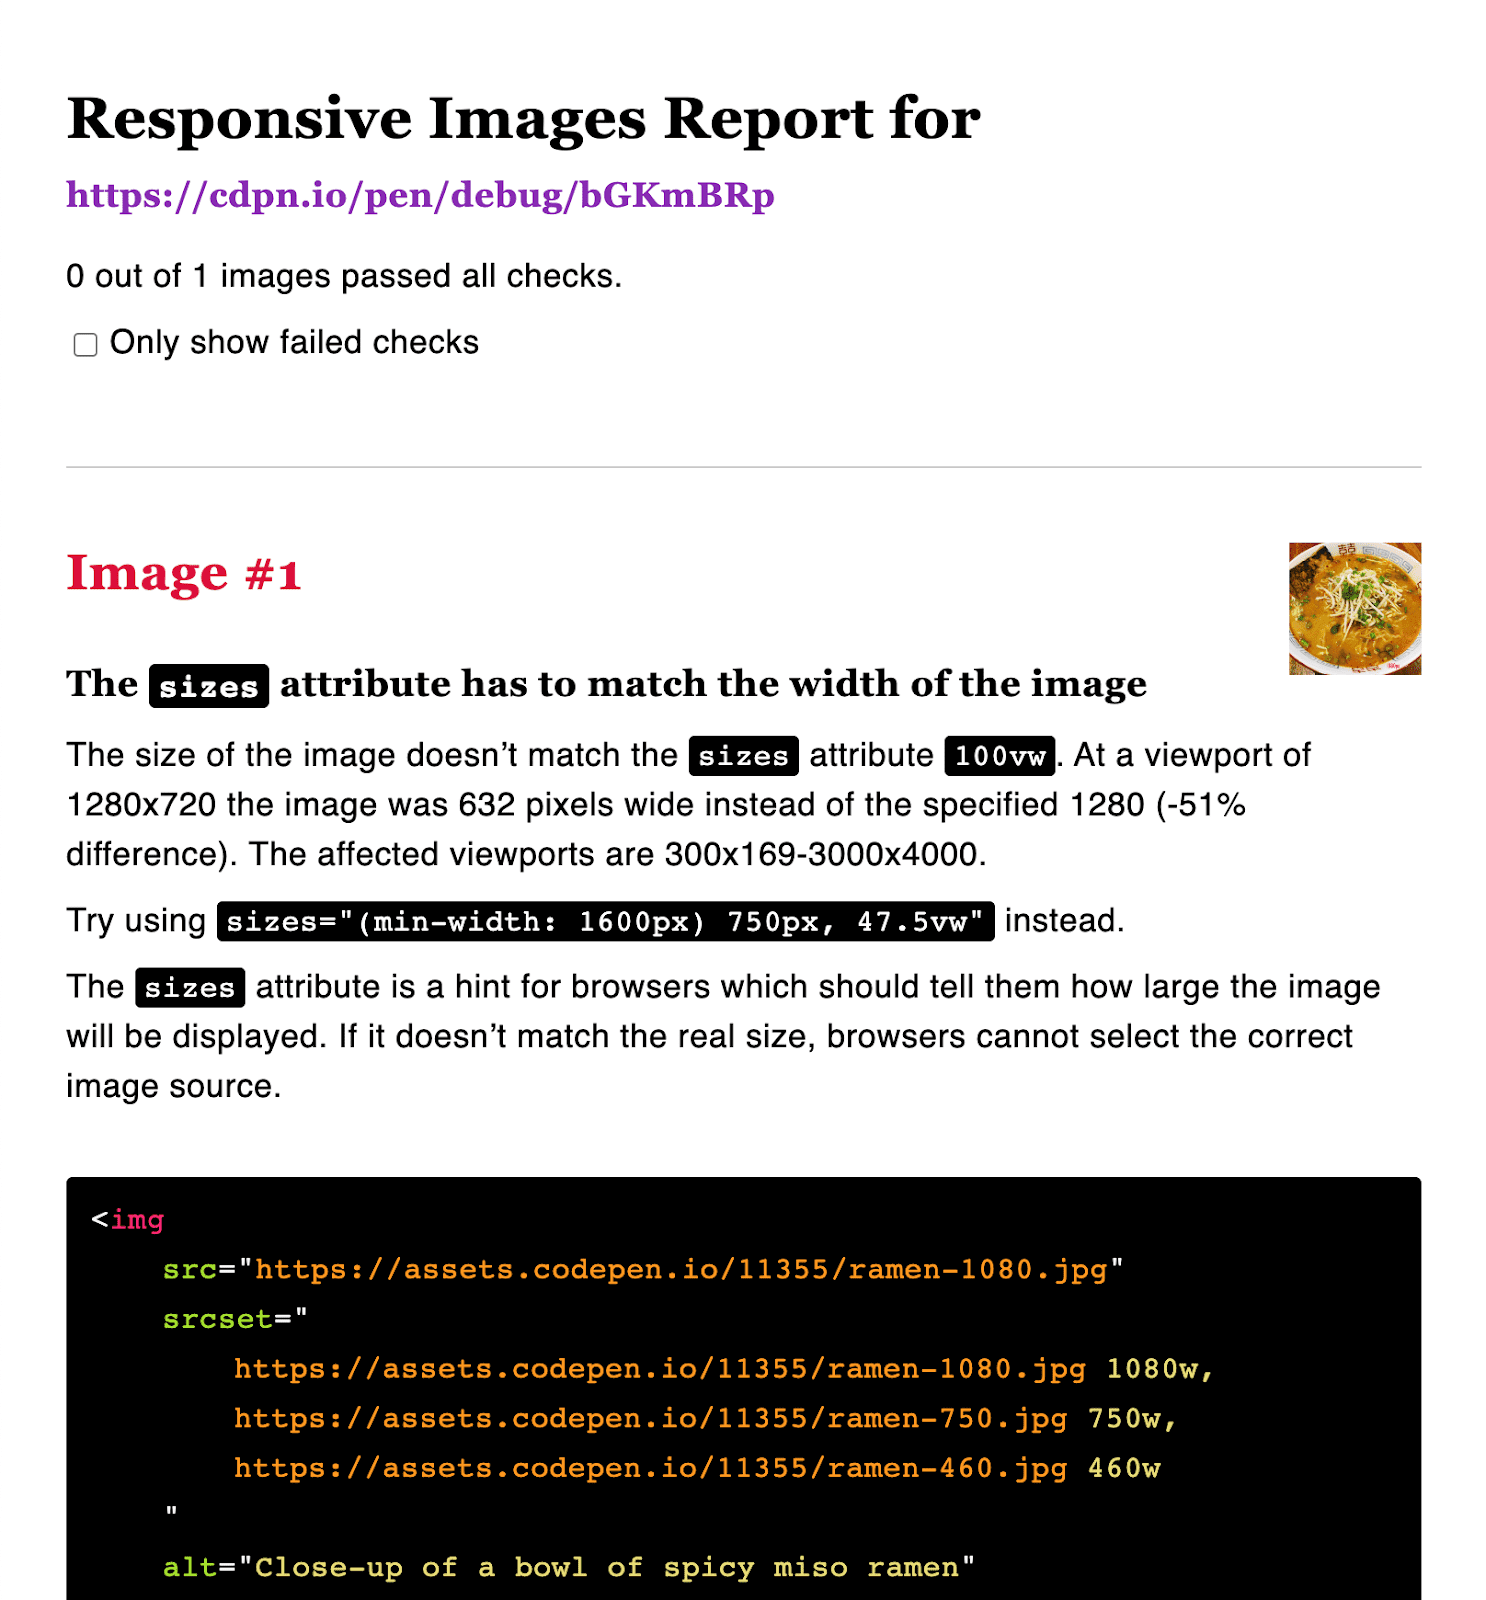 Bericht zu responsiven Bildern mit nicht übereinstimmender Größe und Breite.